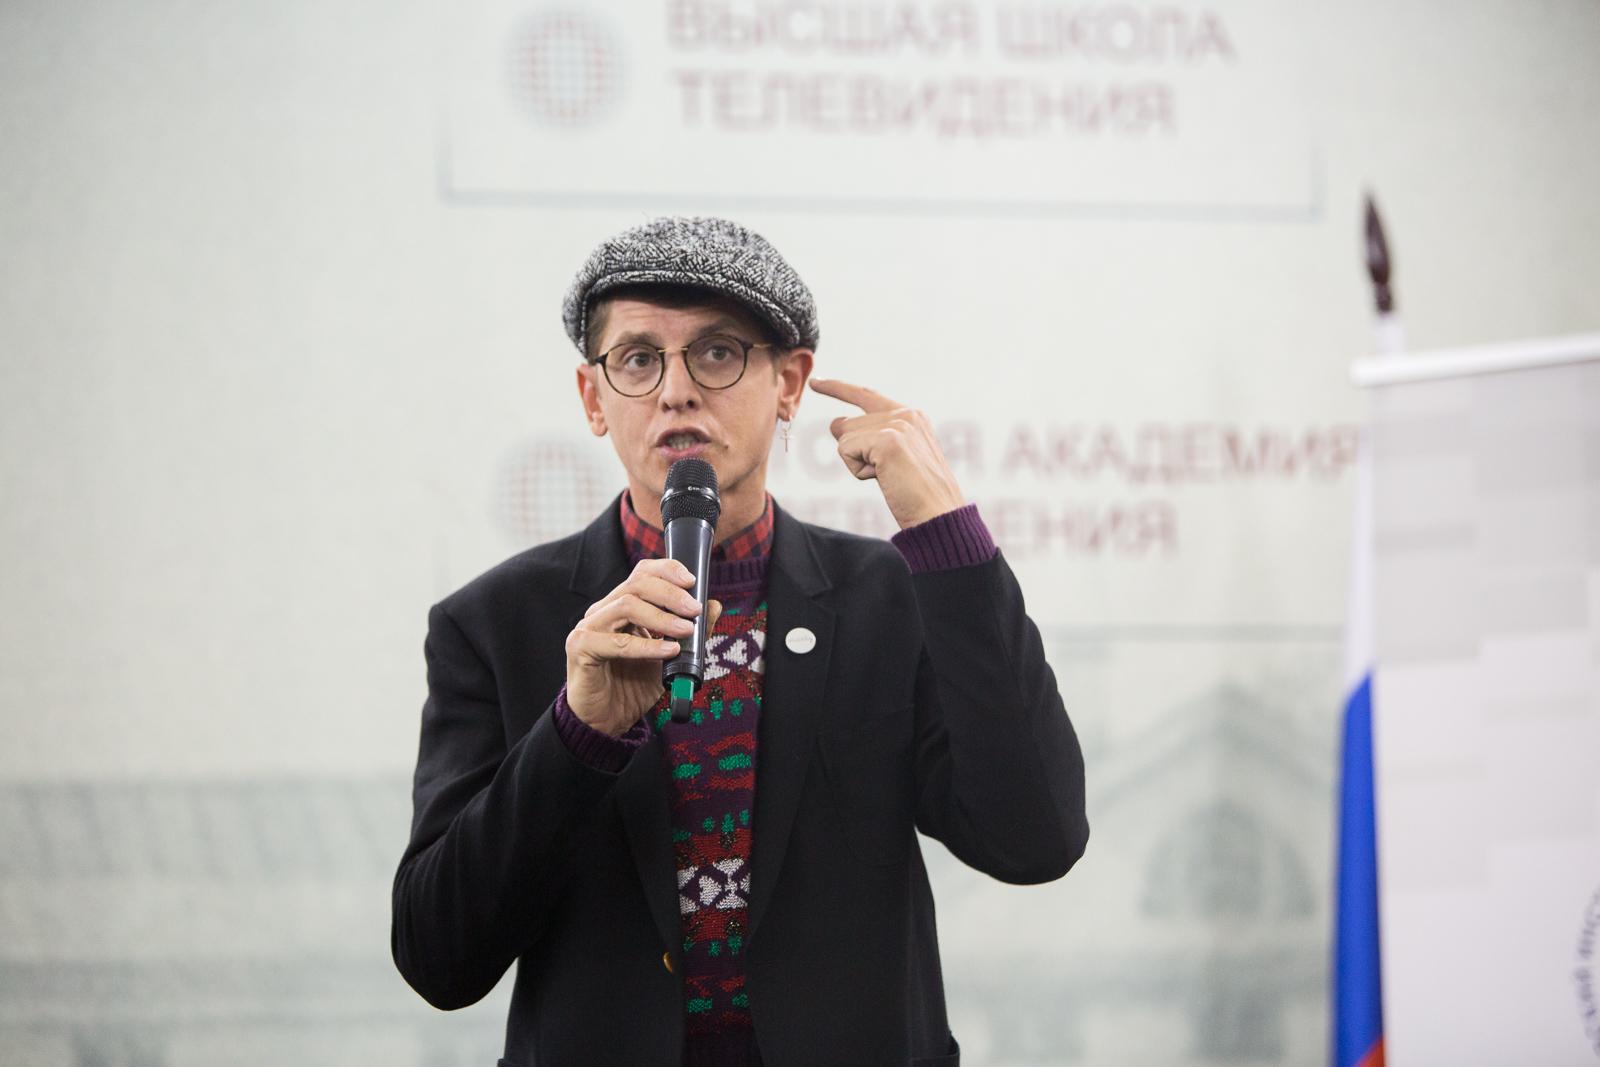 Владислав Лисовец рассказал учащимся Высшей Школы, как создать уникальный образ для работы на телевидении